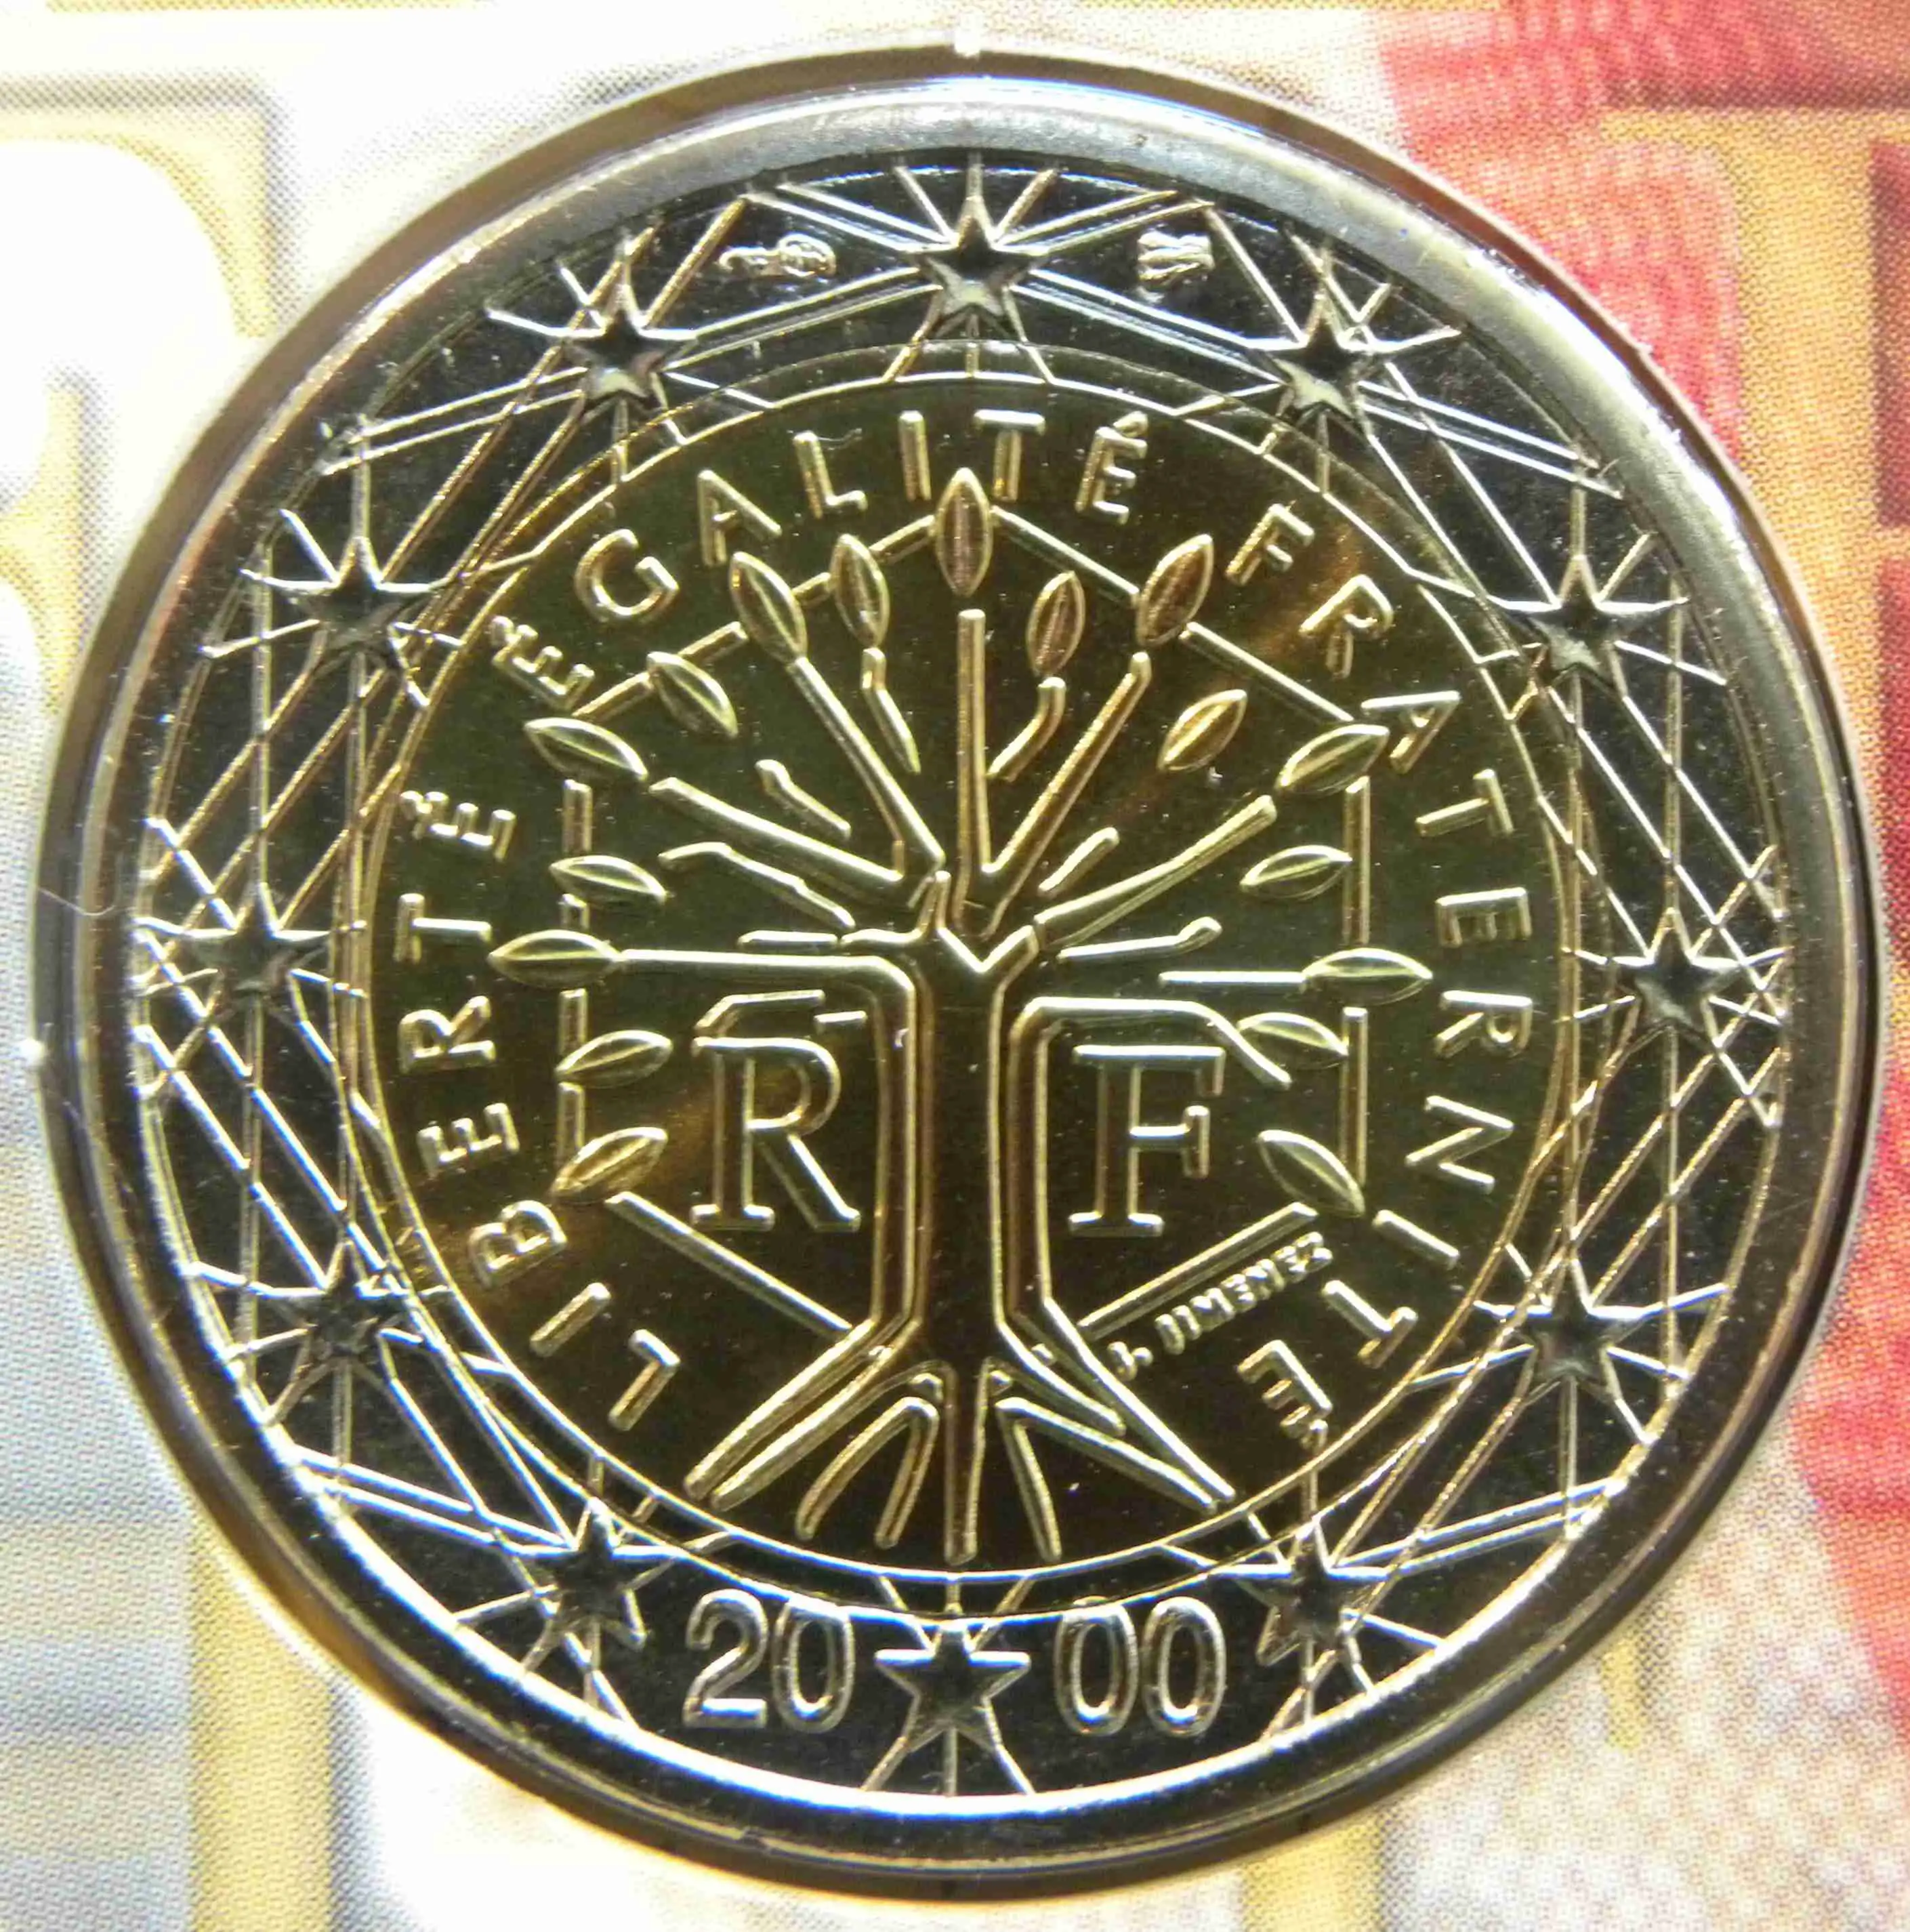 France Monnaies Euro UNC 2000 ᐅ Valeur, tirage et images sur pieceseuro.tv